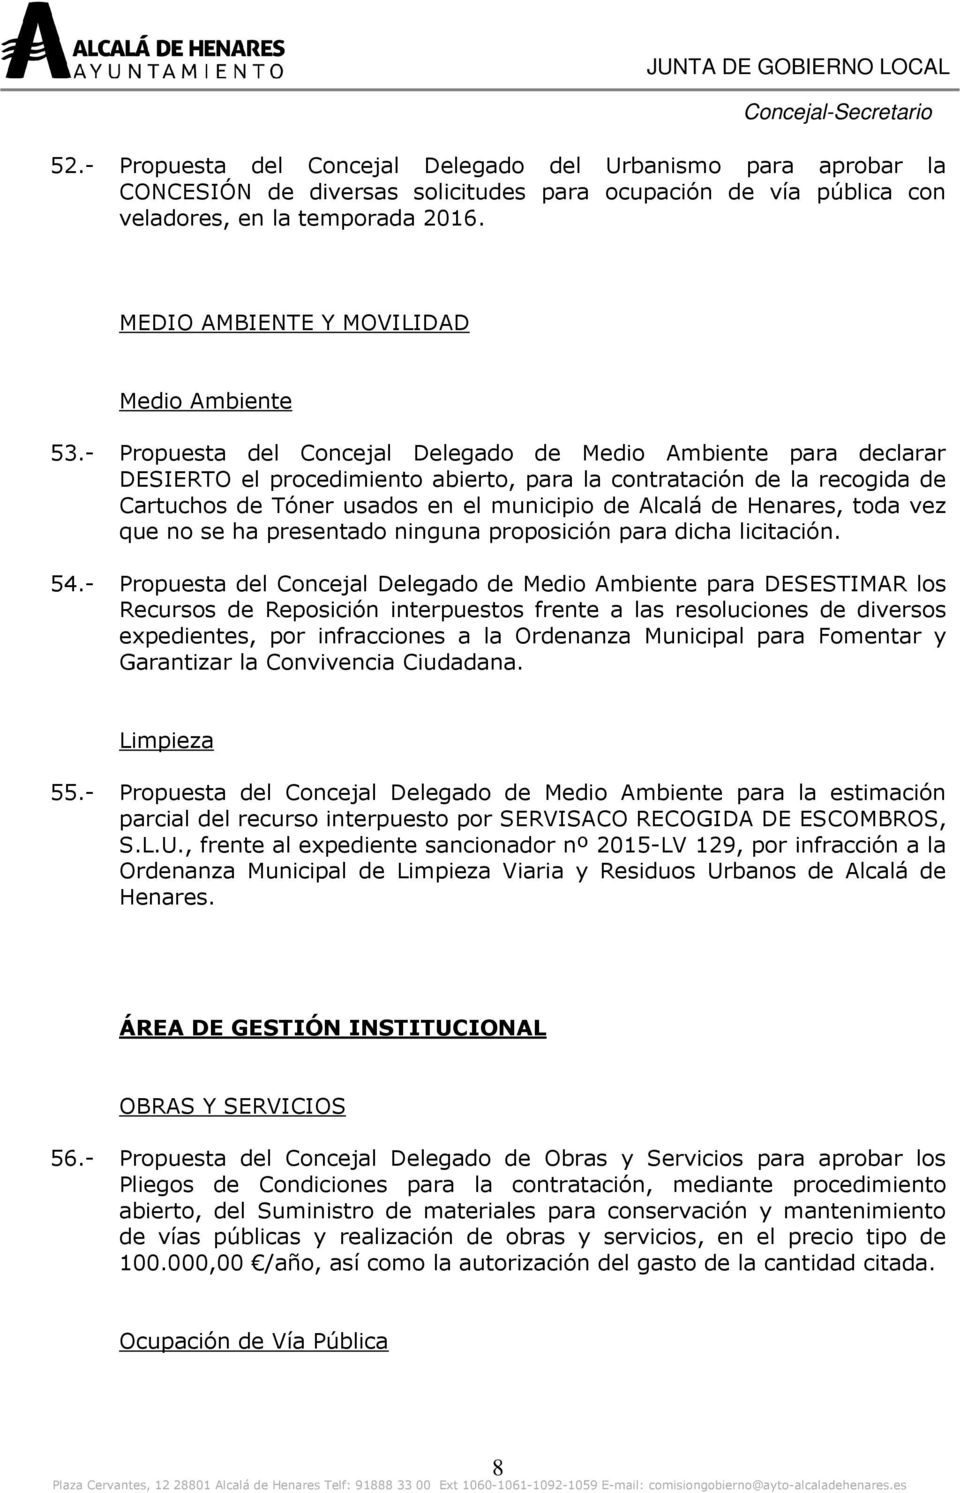 - Propuesta del Concejal Delegado de Medio Ambiente para declarar DESIERTO el procedimiento abierto, para la contratación de la recogida de Cartuchos de Tóner usados en el municipio de Alcalá de